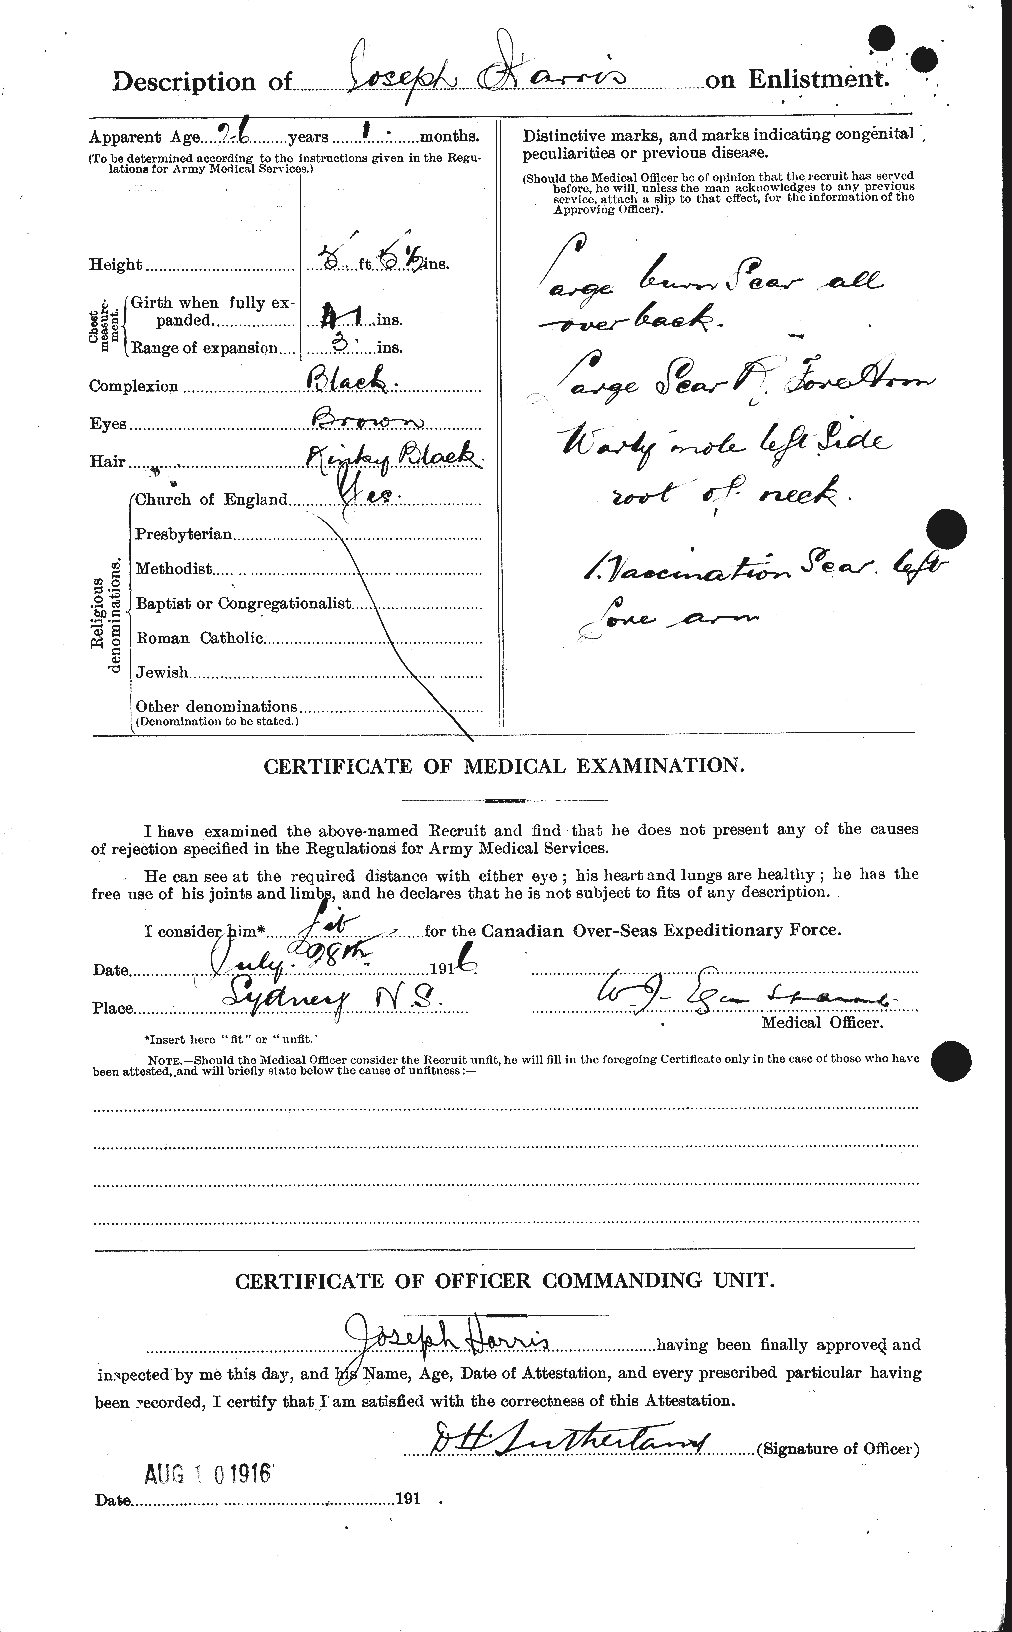 Dossiers du Personnel de la Première Guerre mondiale - CEC 377294b